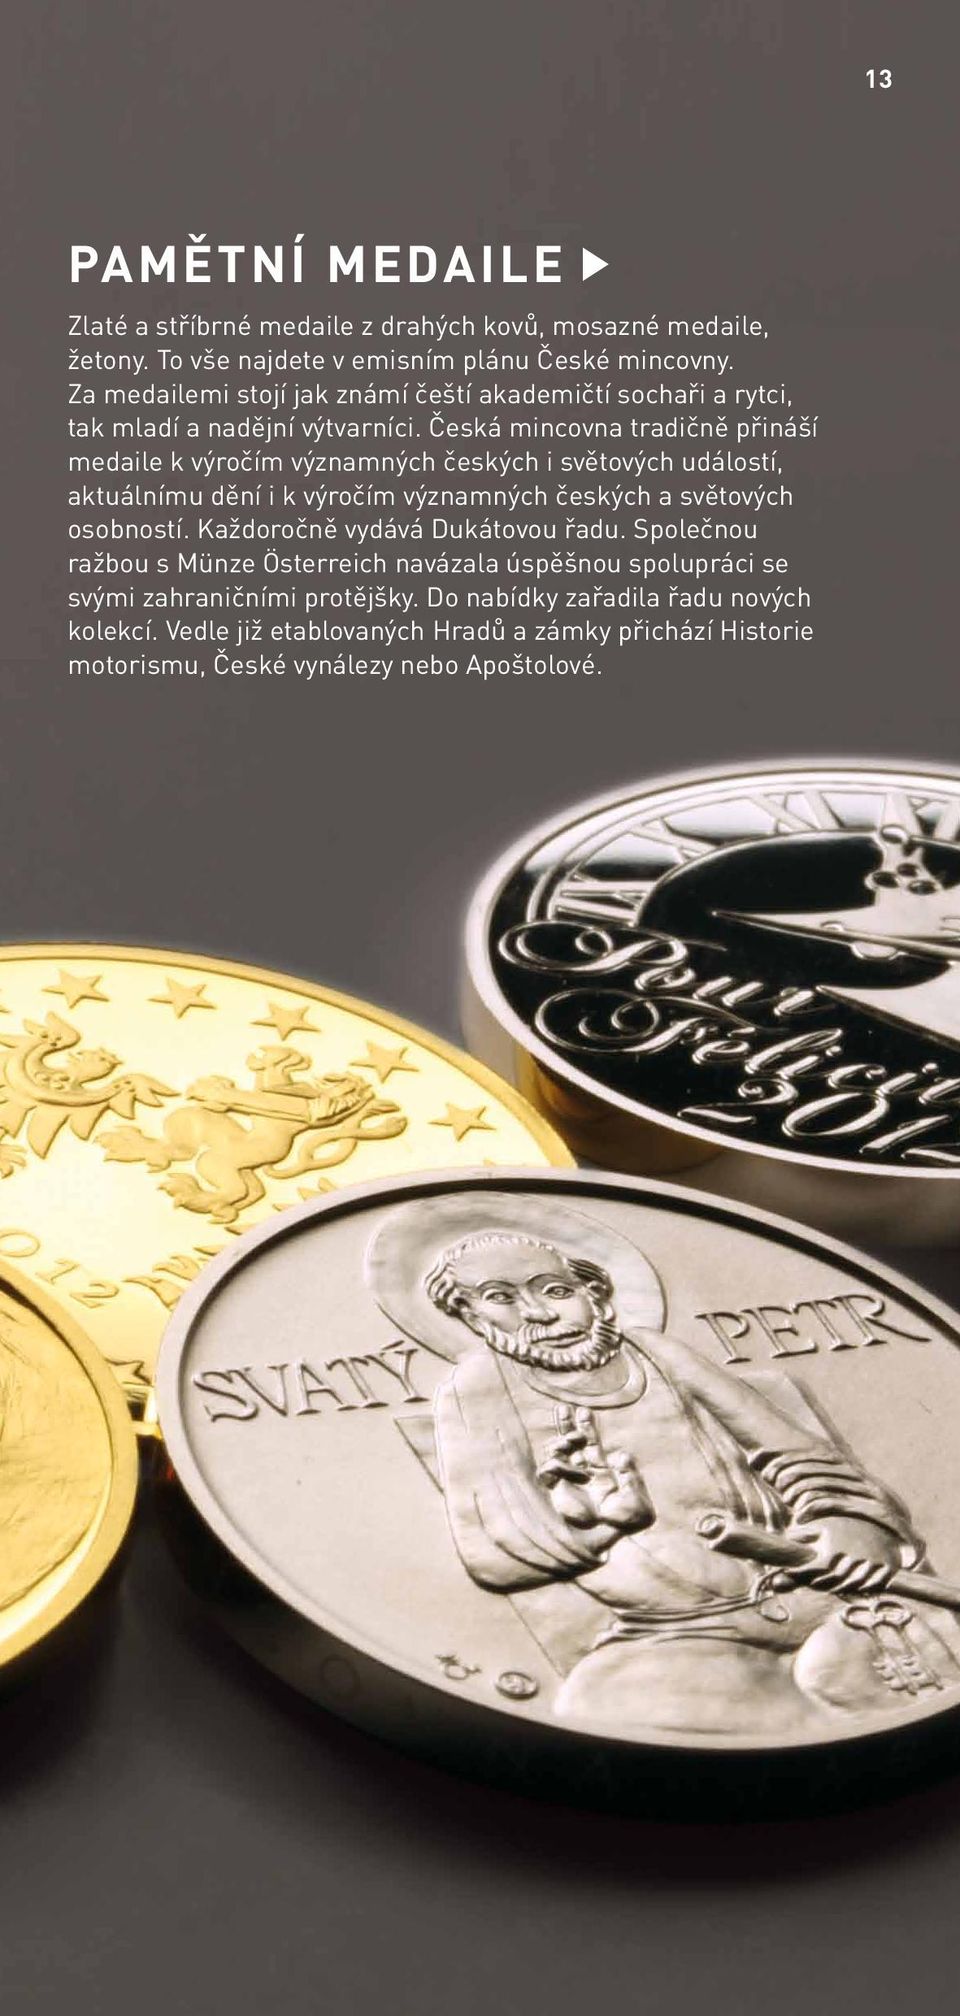 Česká mincovna tradičně přináší medaile k výročím významných českých i světových událostí, aktuálnímu dění i k výročím významných českých a světových osobností.